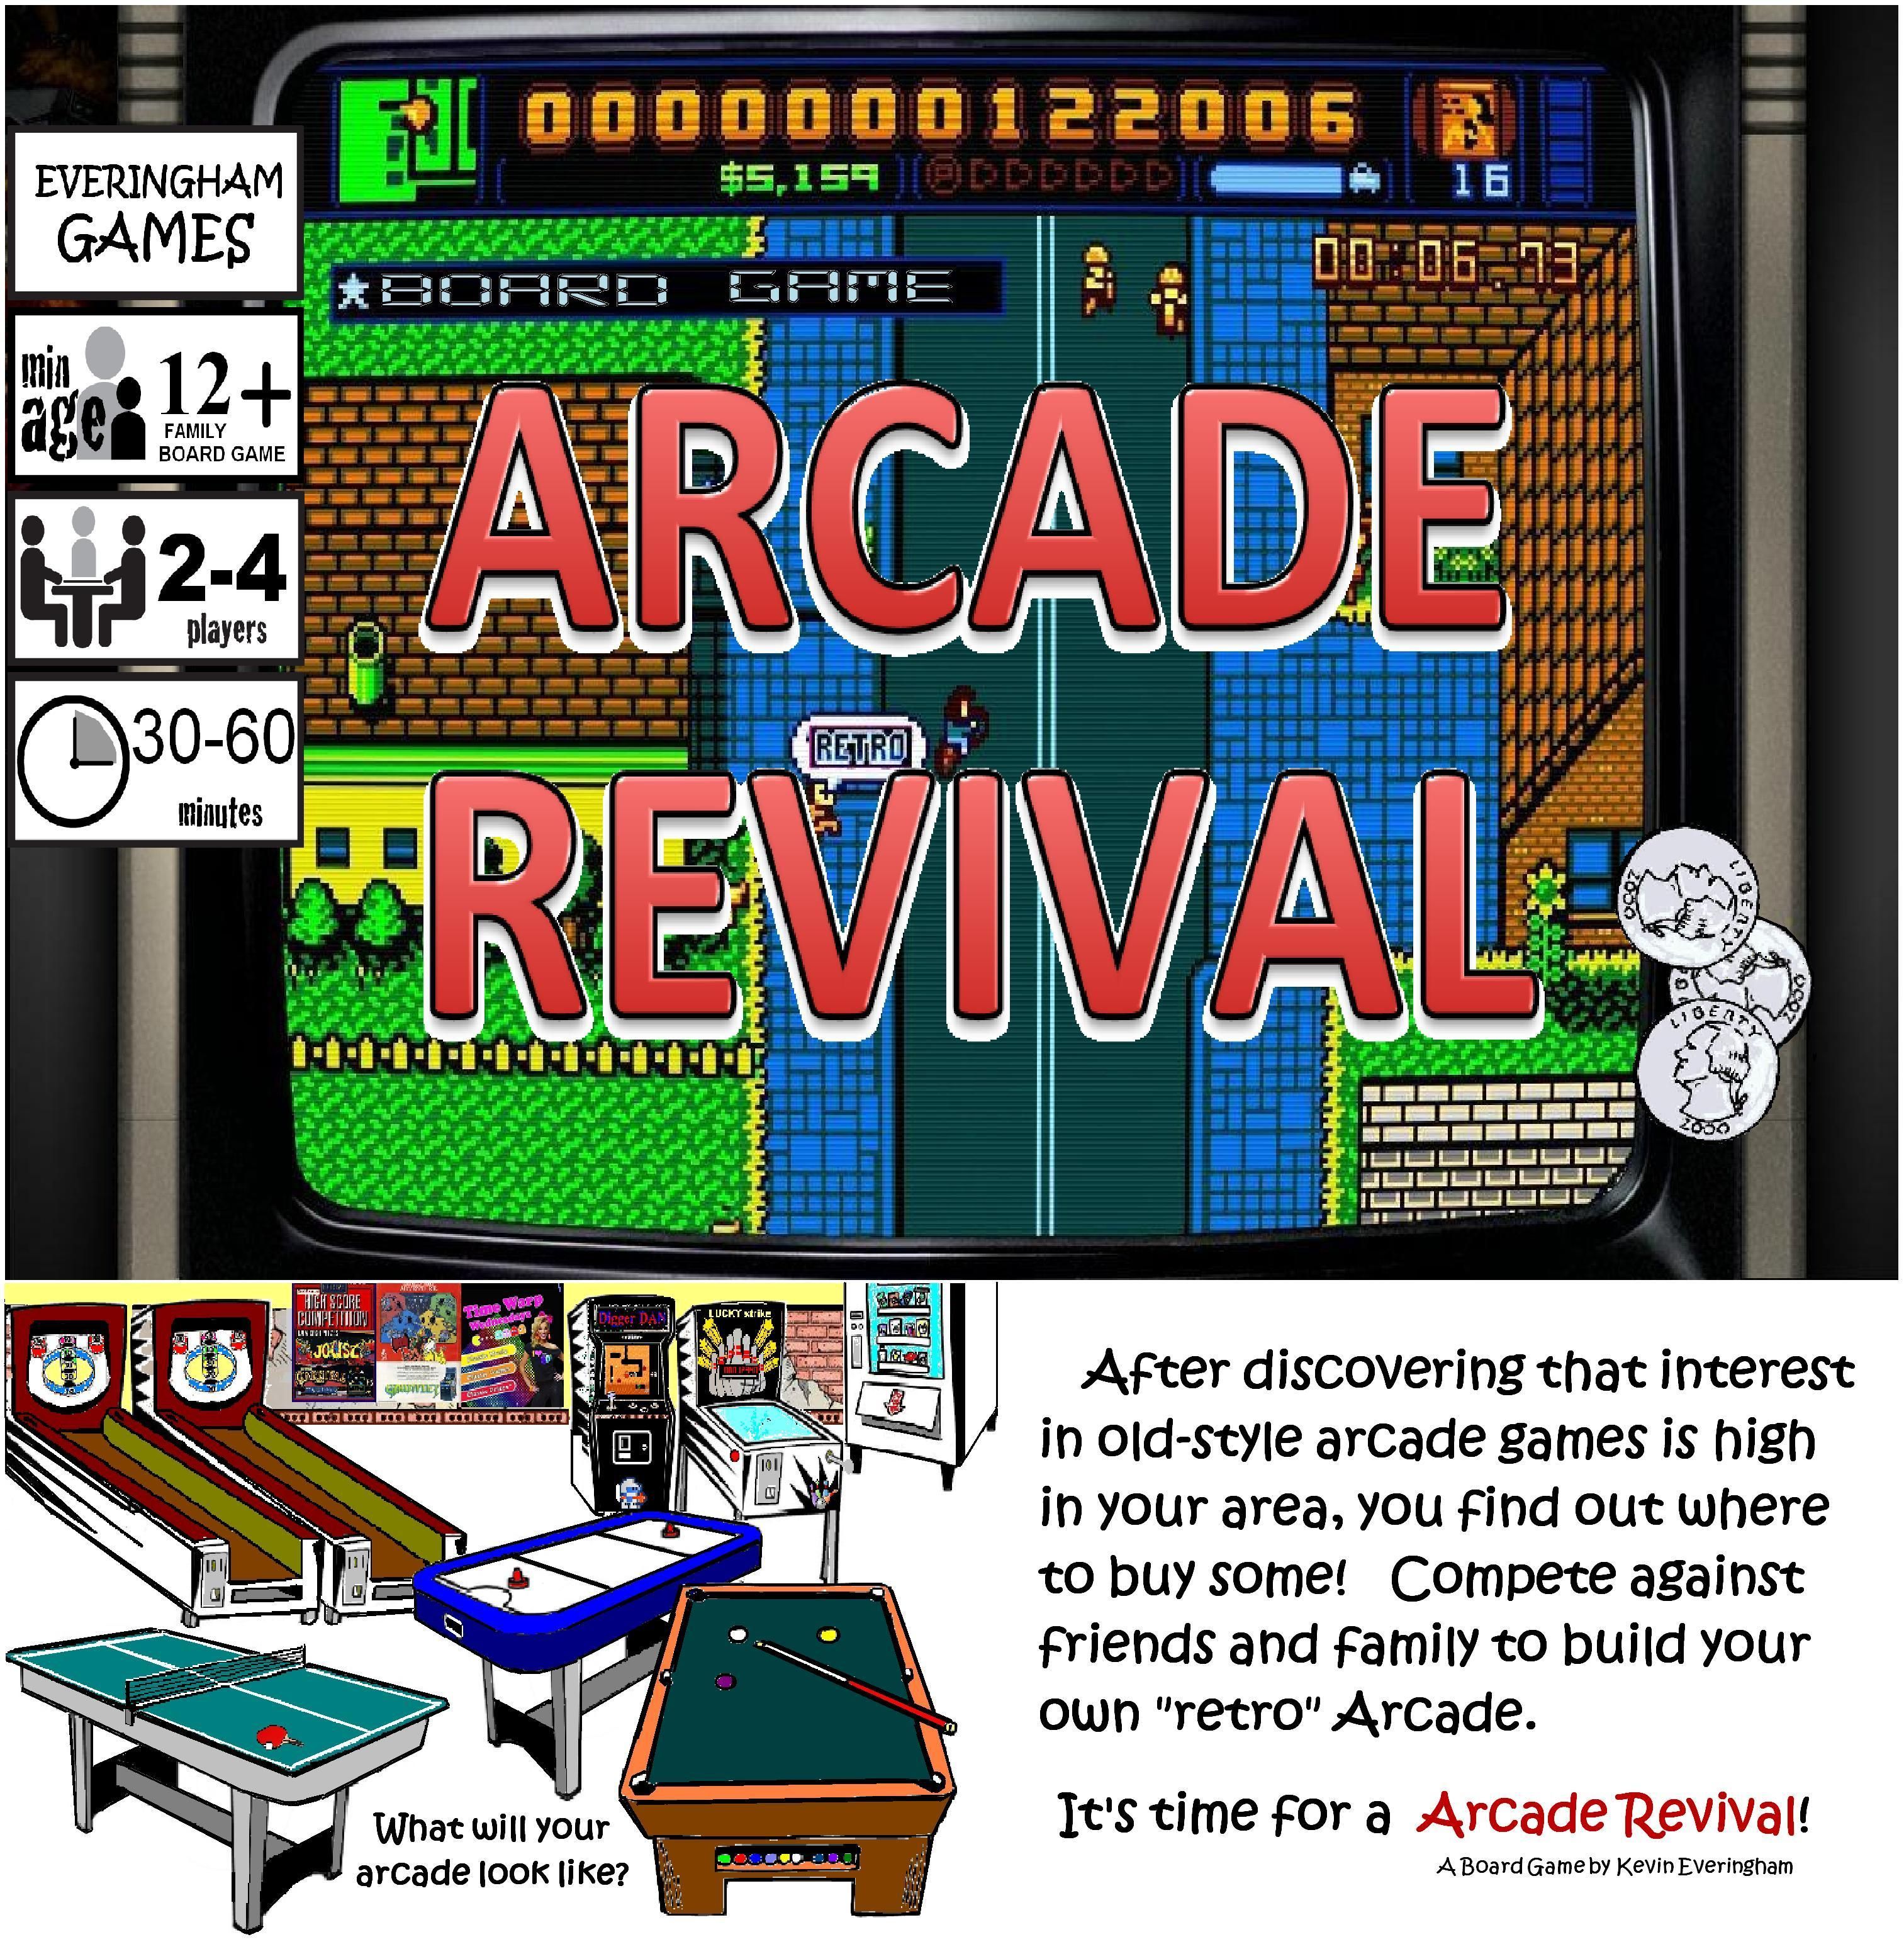 Arcade Revival